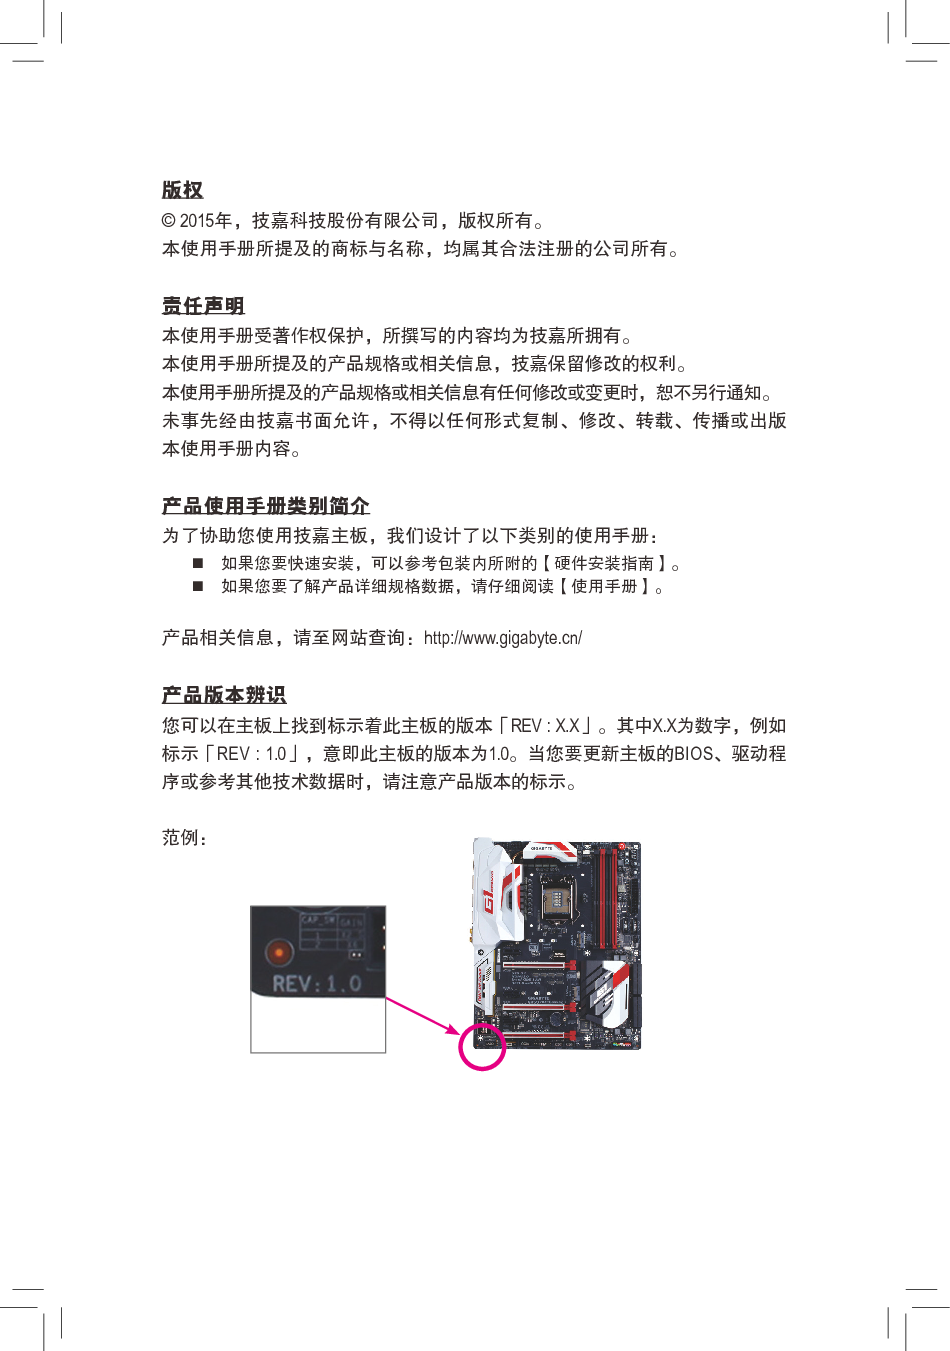 技嘉 Gigabyte GA-Z170X-Gaming G1 1001版 使用手册 第2页